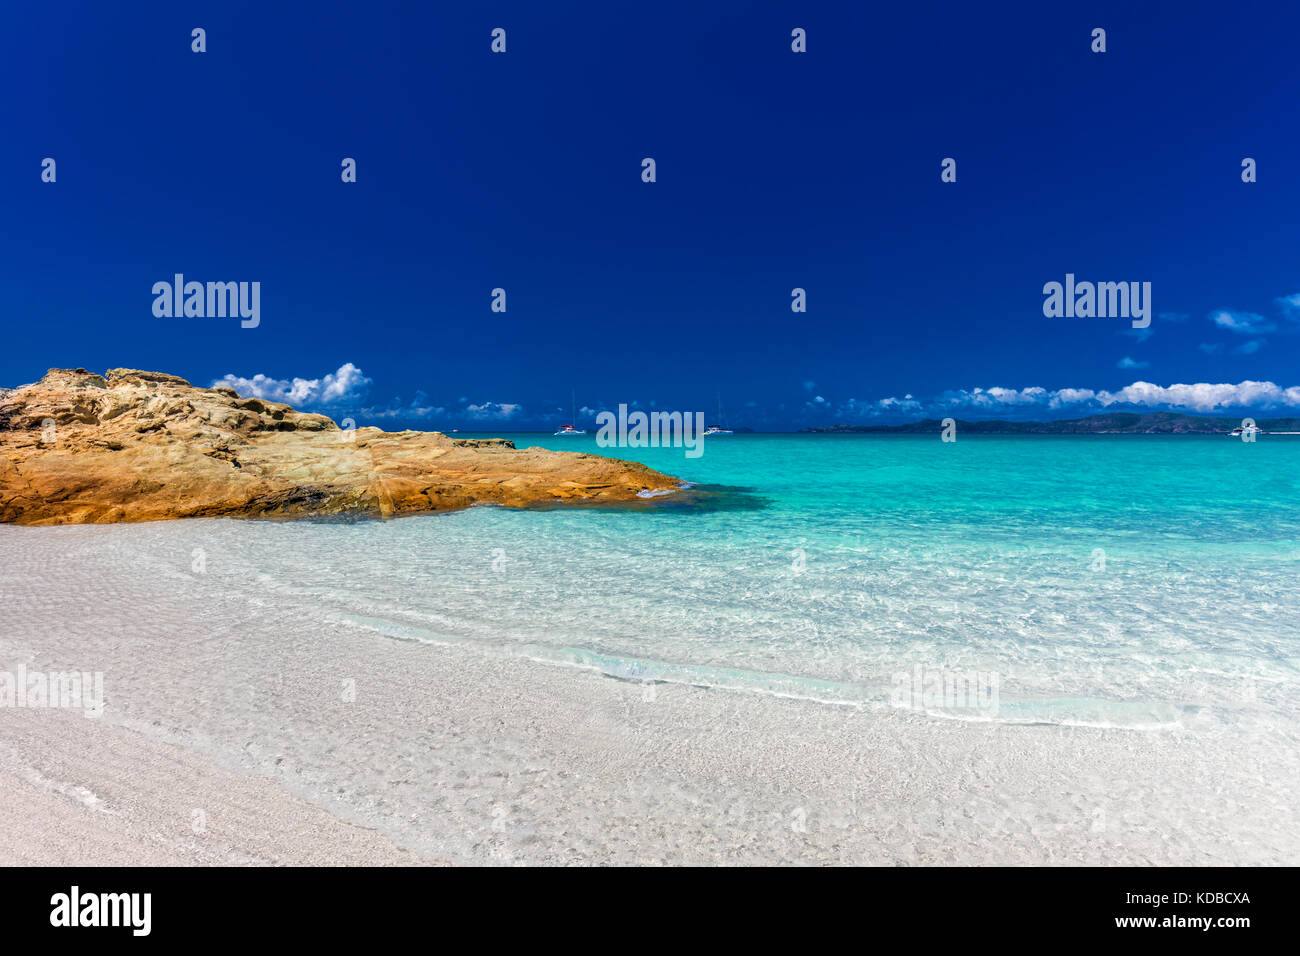 Amazing célèbre Whitehaven Beach avec du sable blanc dans les Whitsunday Islands, Queensland, Australie Banque D'Images